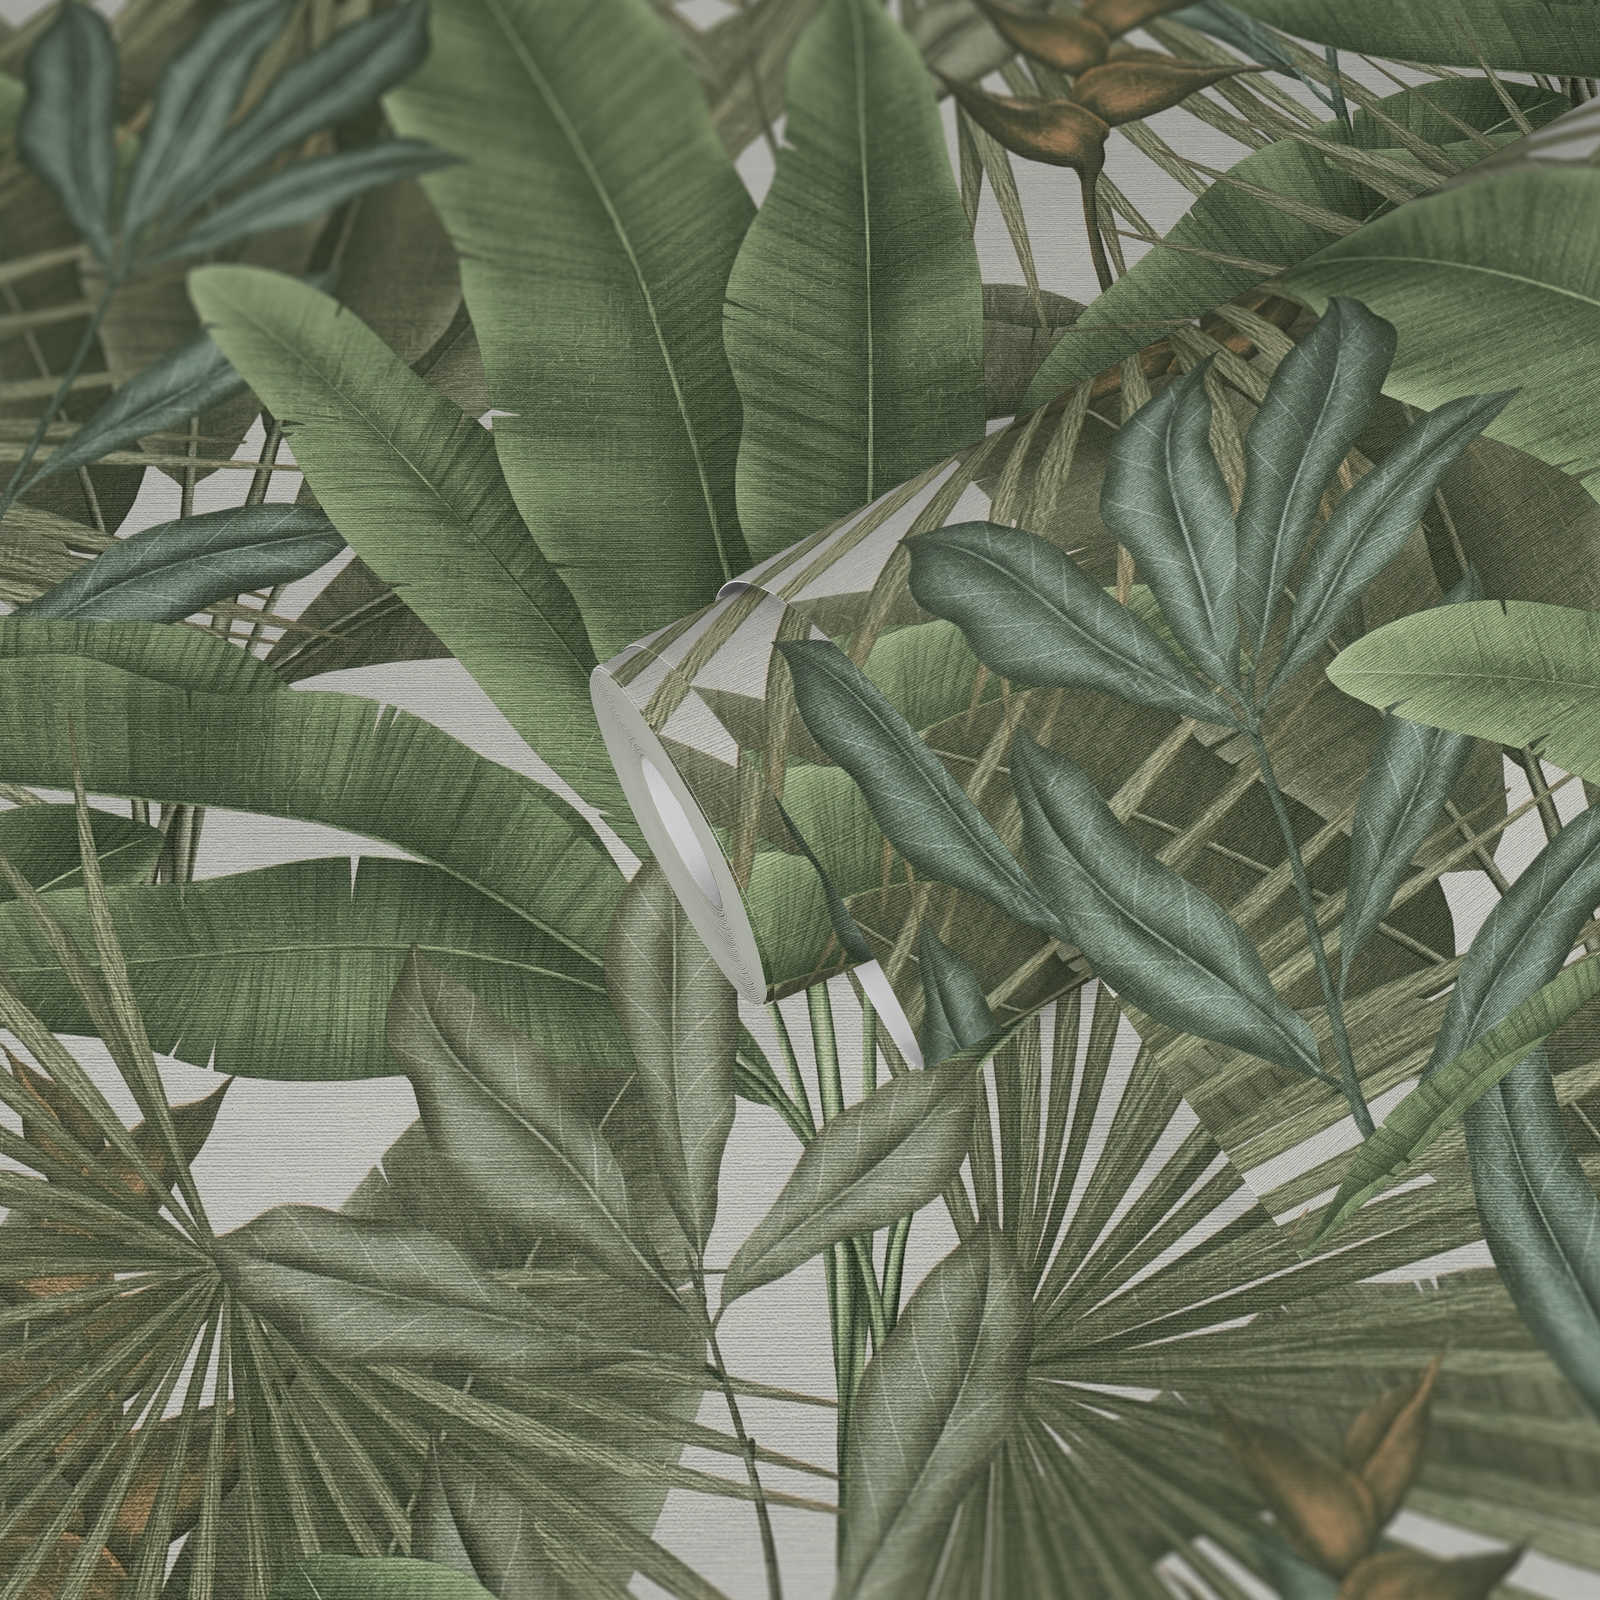             Bloemrijk jungle behang licht gestructureerd met grote bladeren - groen, wit, beige
        